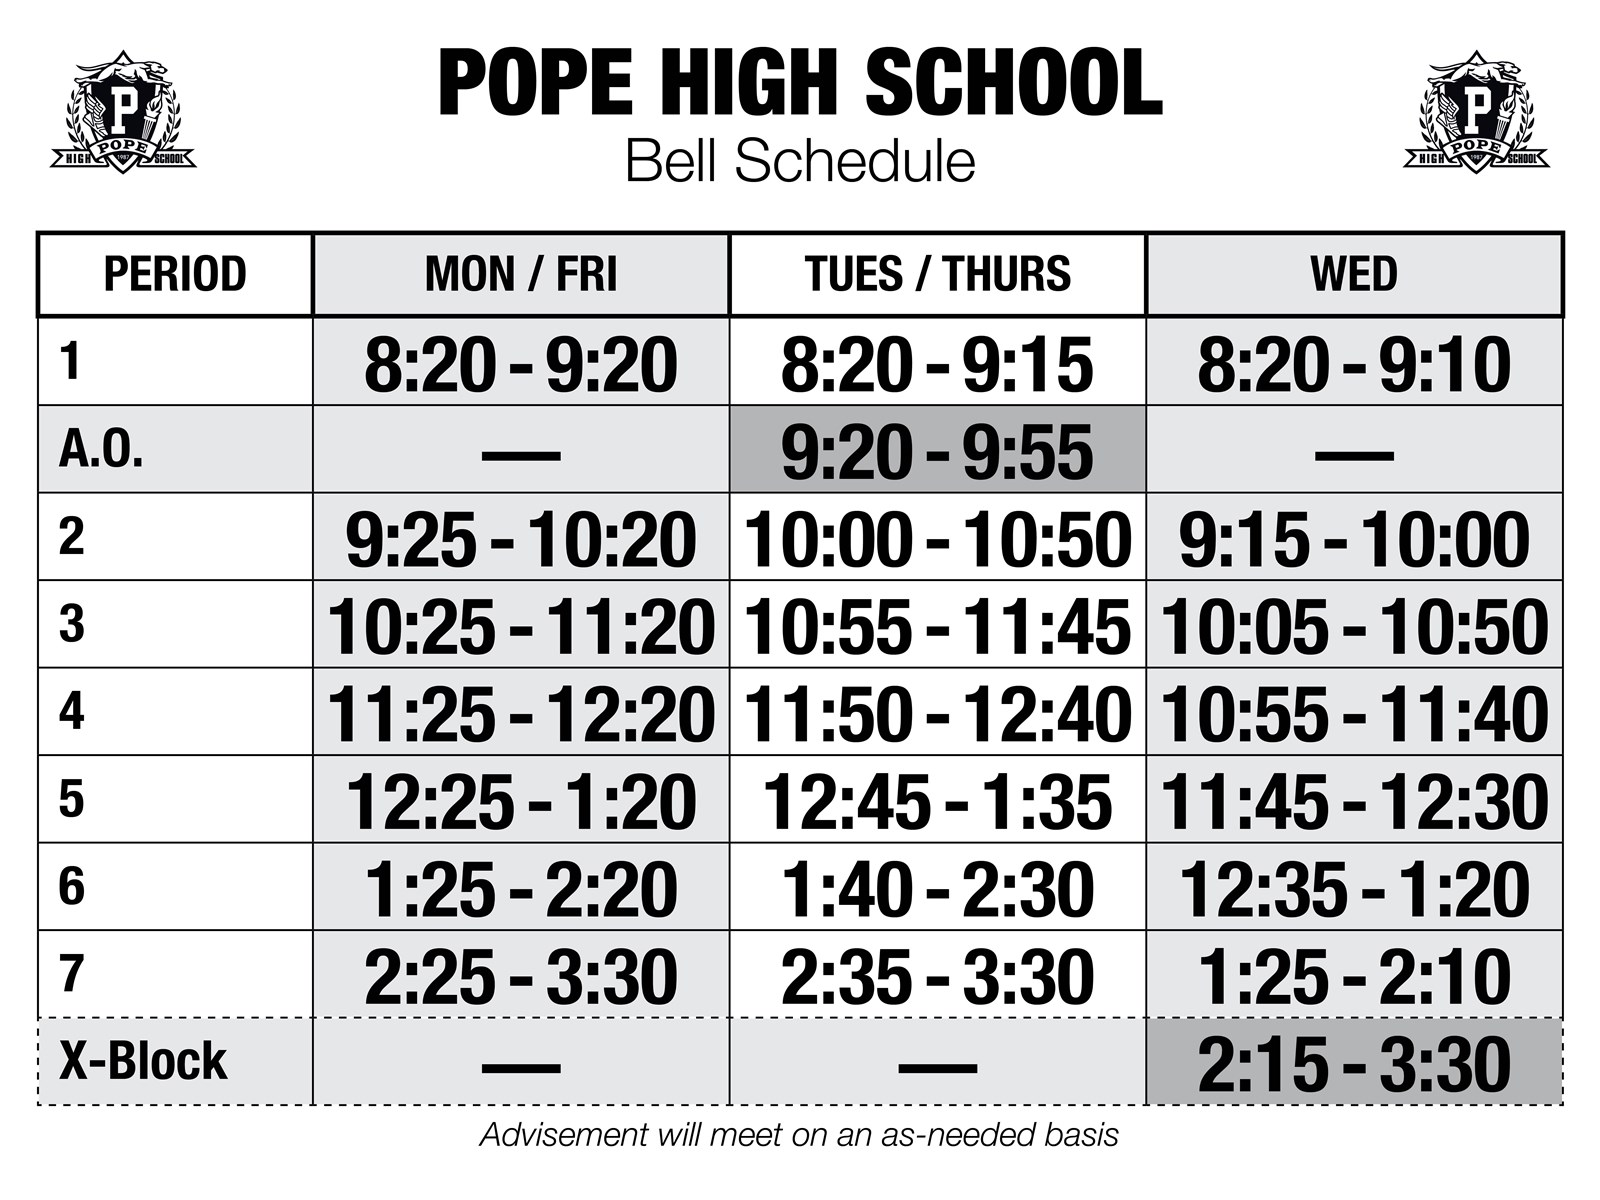 Pope High School bell schedule